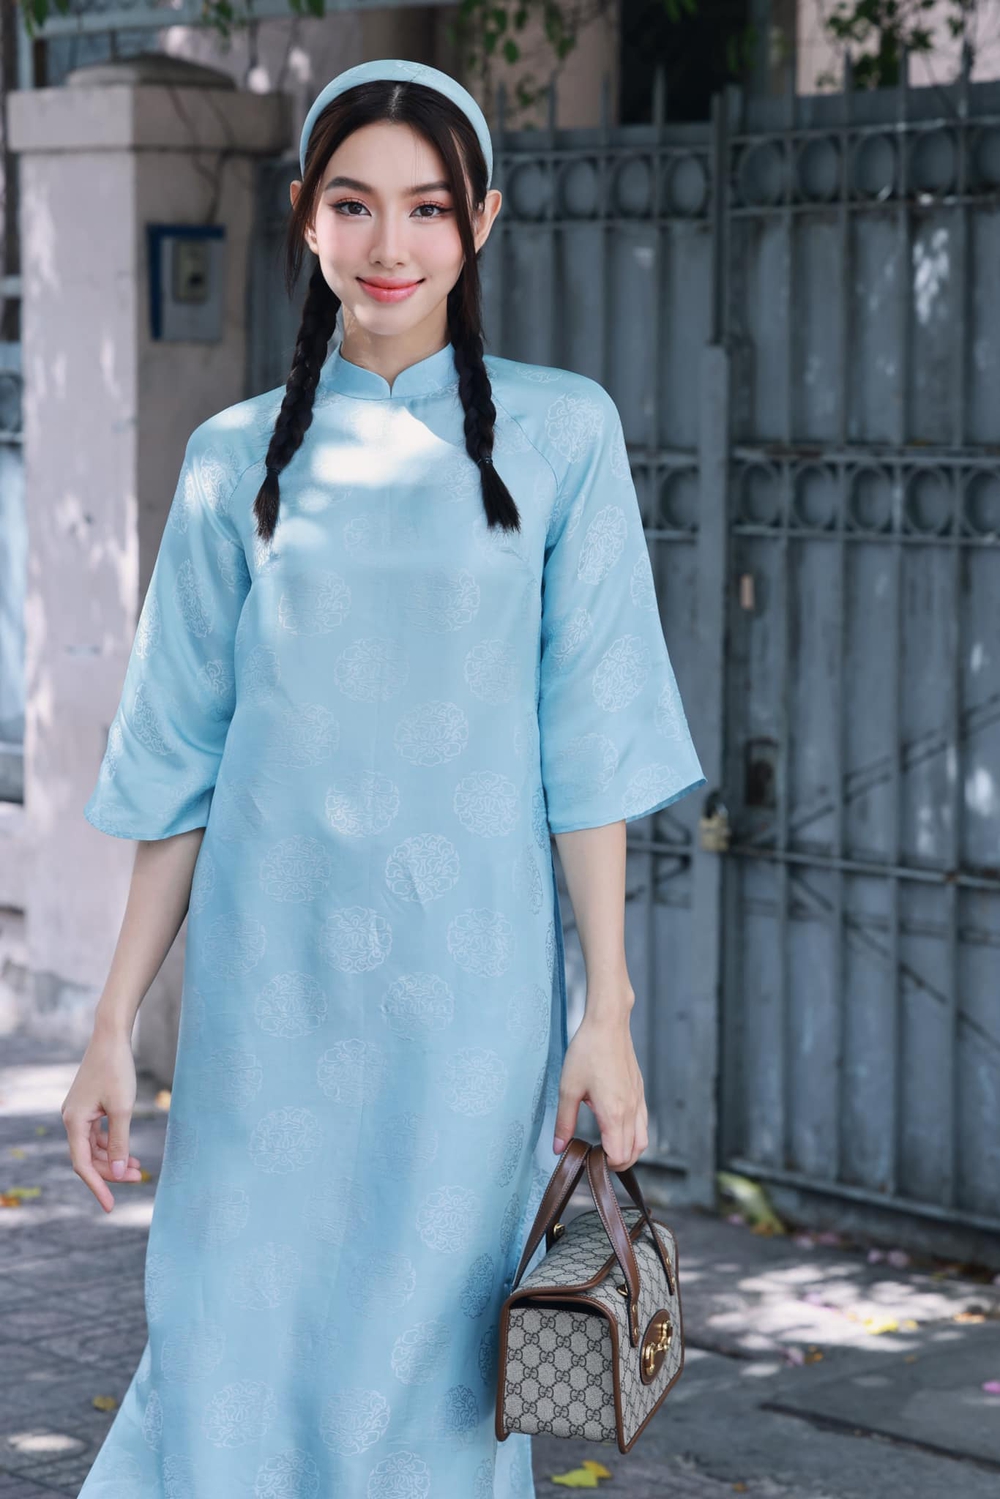 Mê mệt loạt áo dài Tết của Hoa hậu Thùy Tiên: Toàn đồ local brand quen mặt, thiết kế điệu đà cứ diện là xinh - ảnh 1